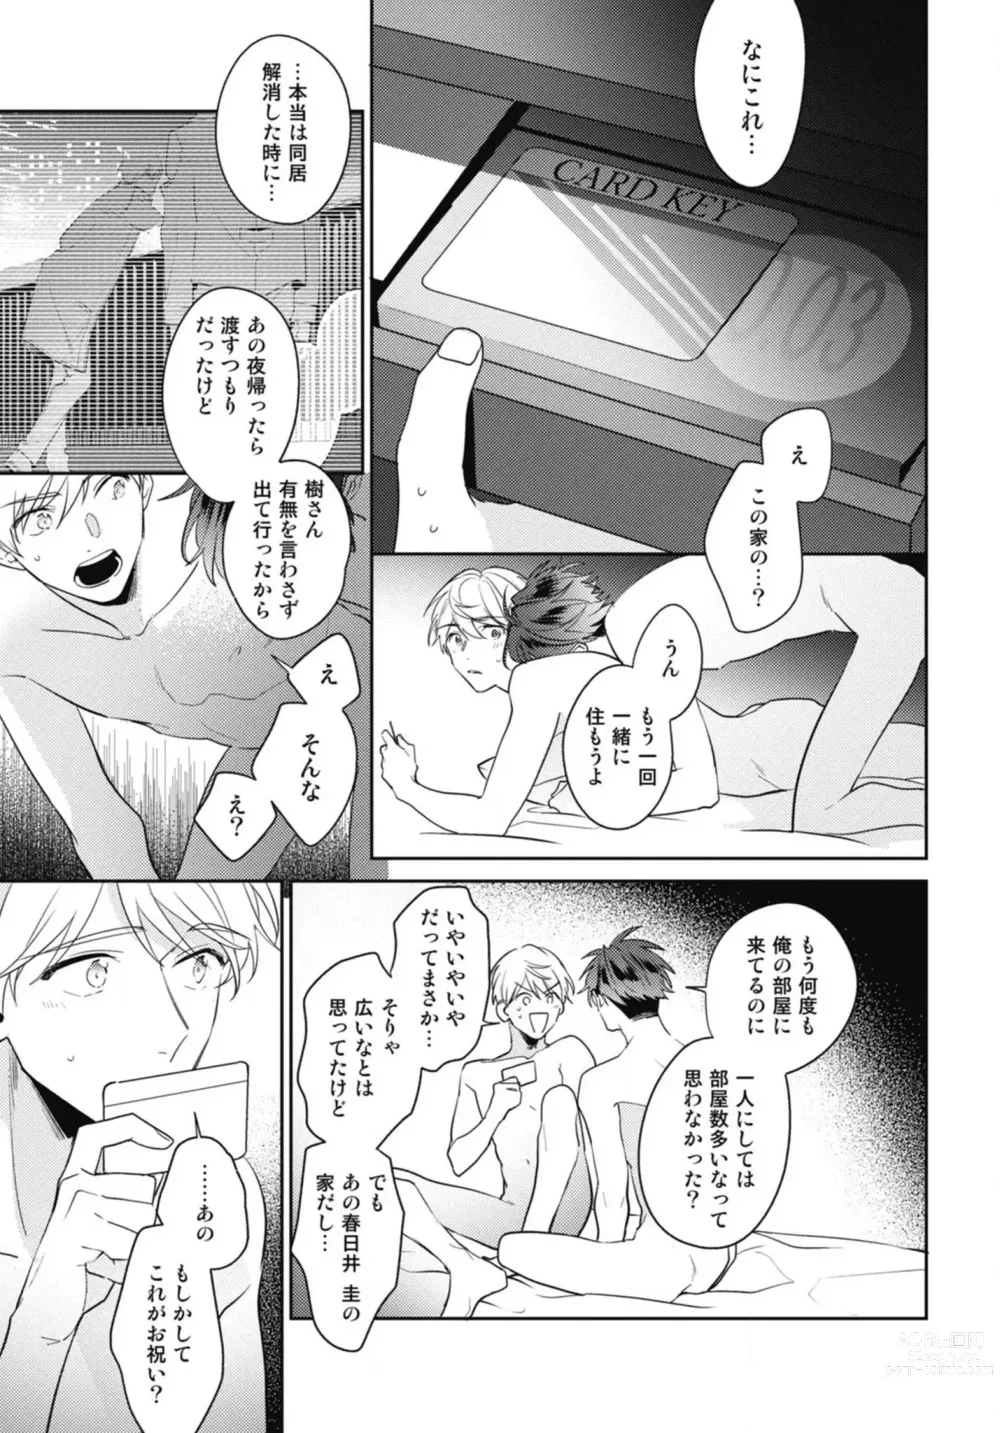 Page 175 of manga Aisaretagari no Surface